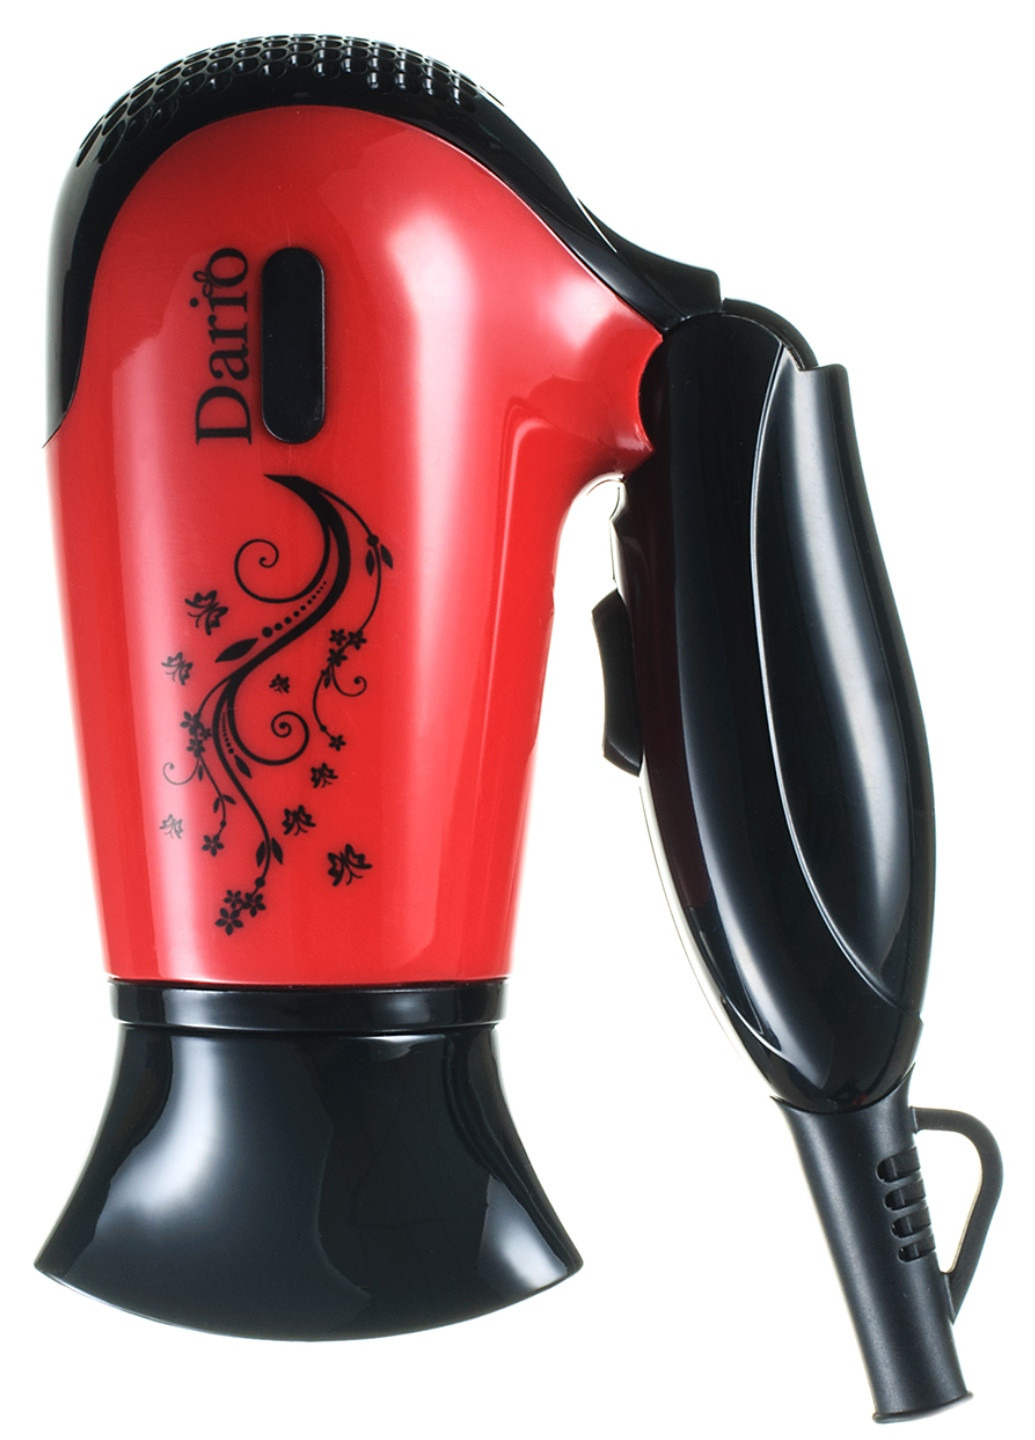 Фен электрический для сушки и укладки волос 220 В; арт.DHD9114; т.м. Dario dhd9114_red (197140502)